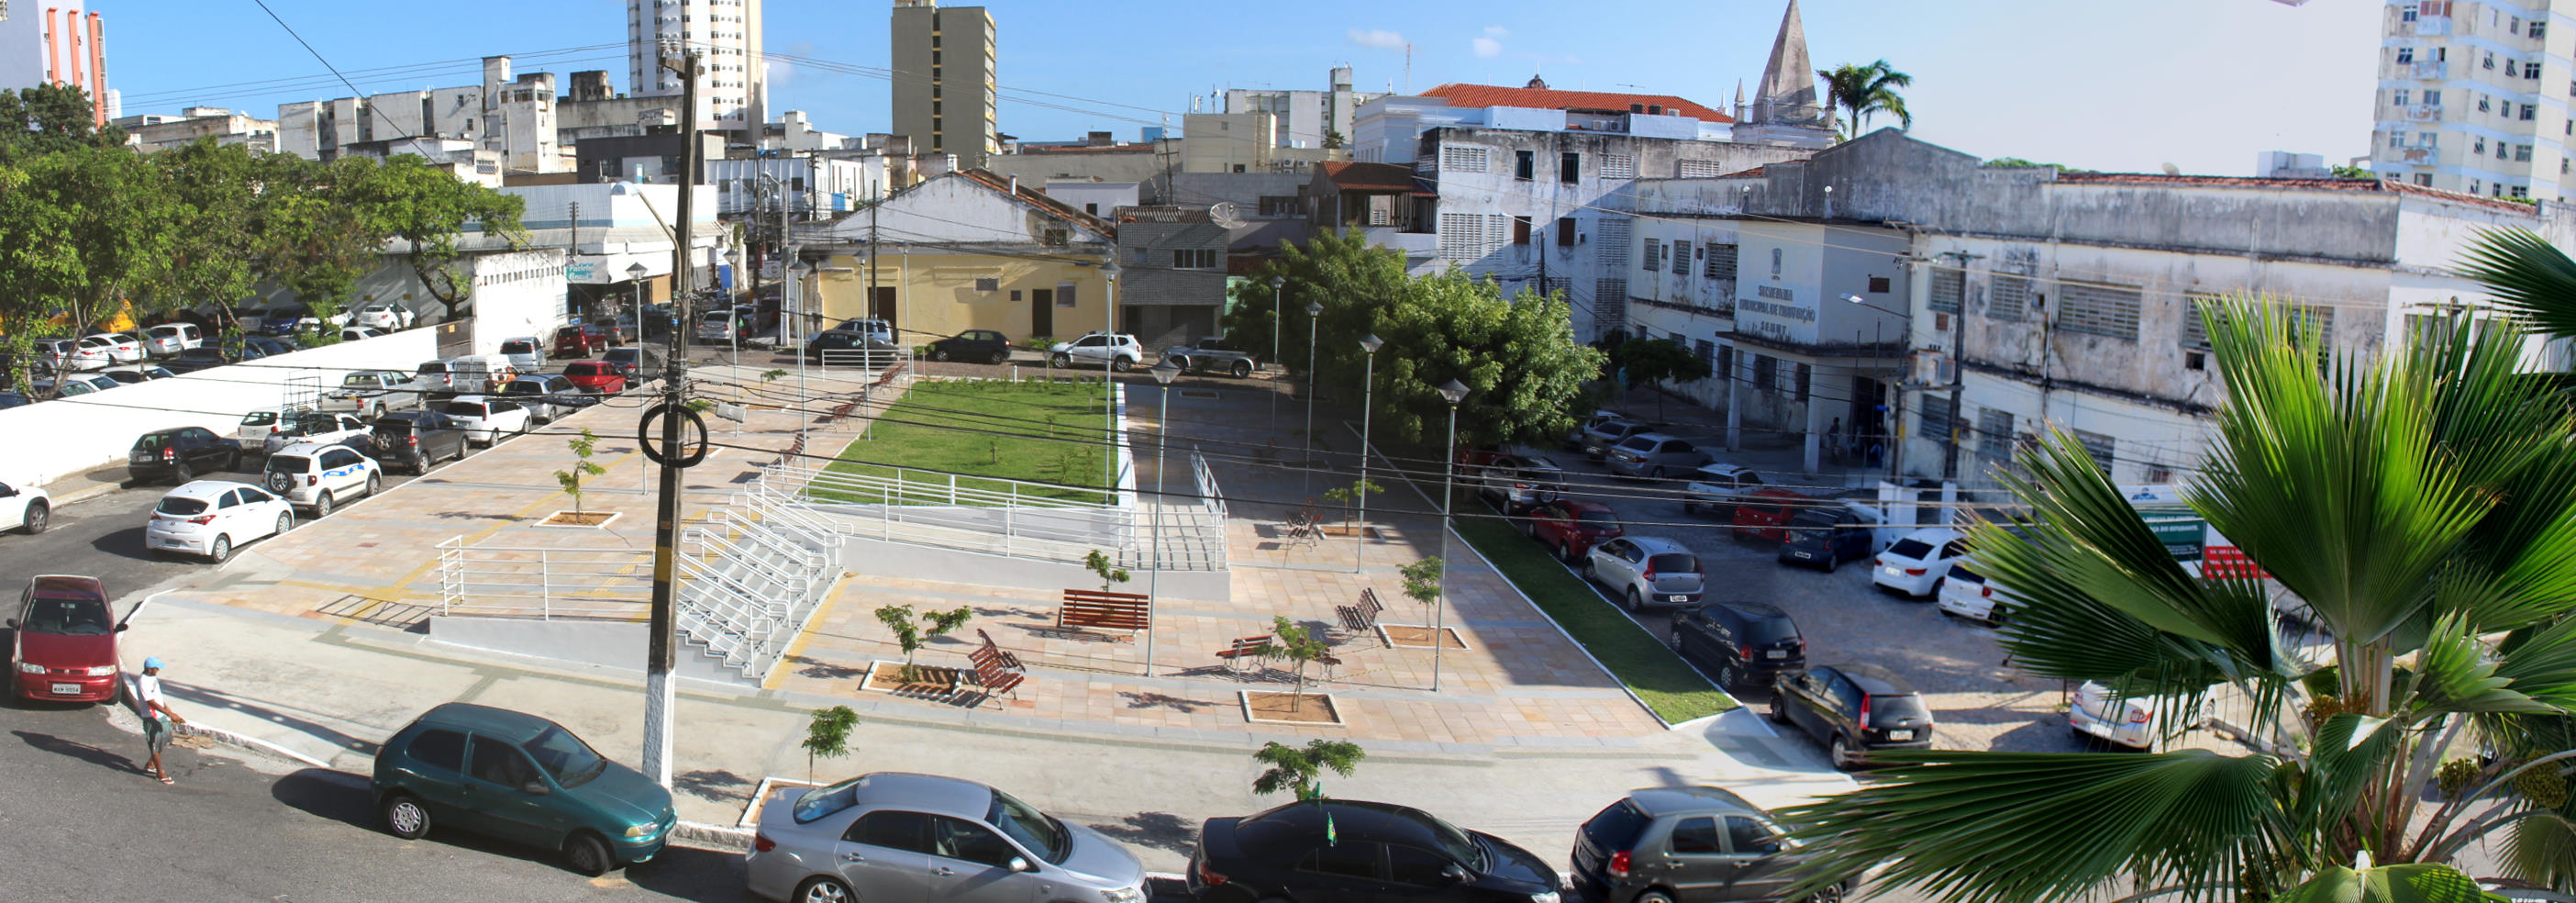 Notícia: Praça do Estudante, em Natal (RN), é requalificada - IPHAN -  Instituto do Patrimônio Histórico e Artístico Nacional